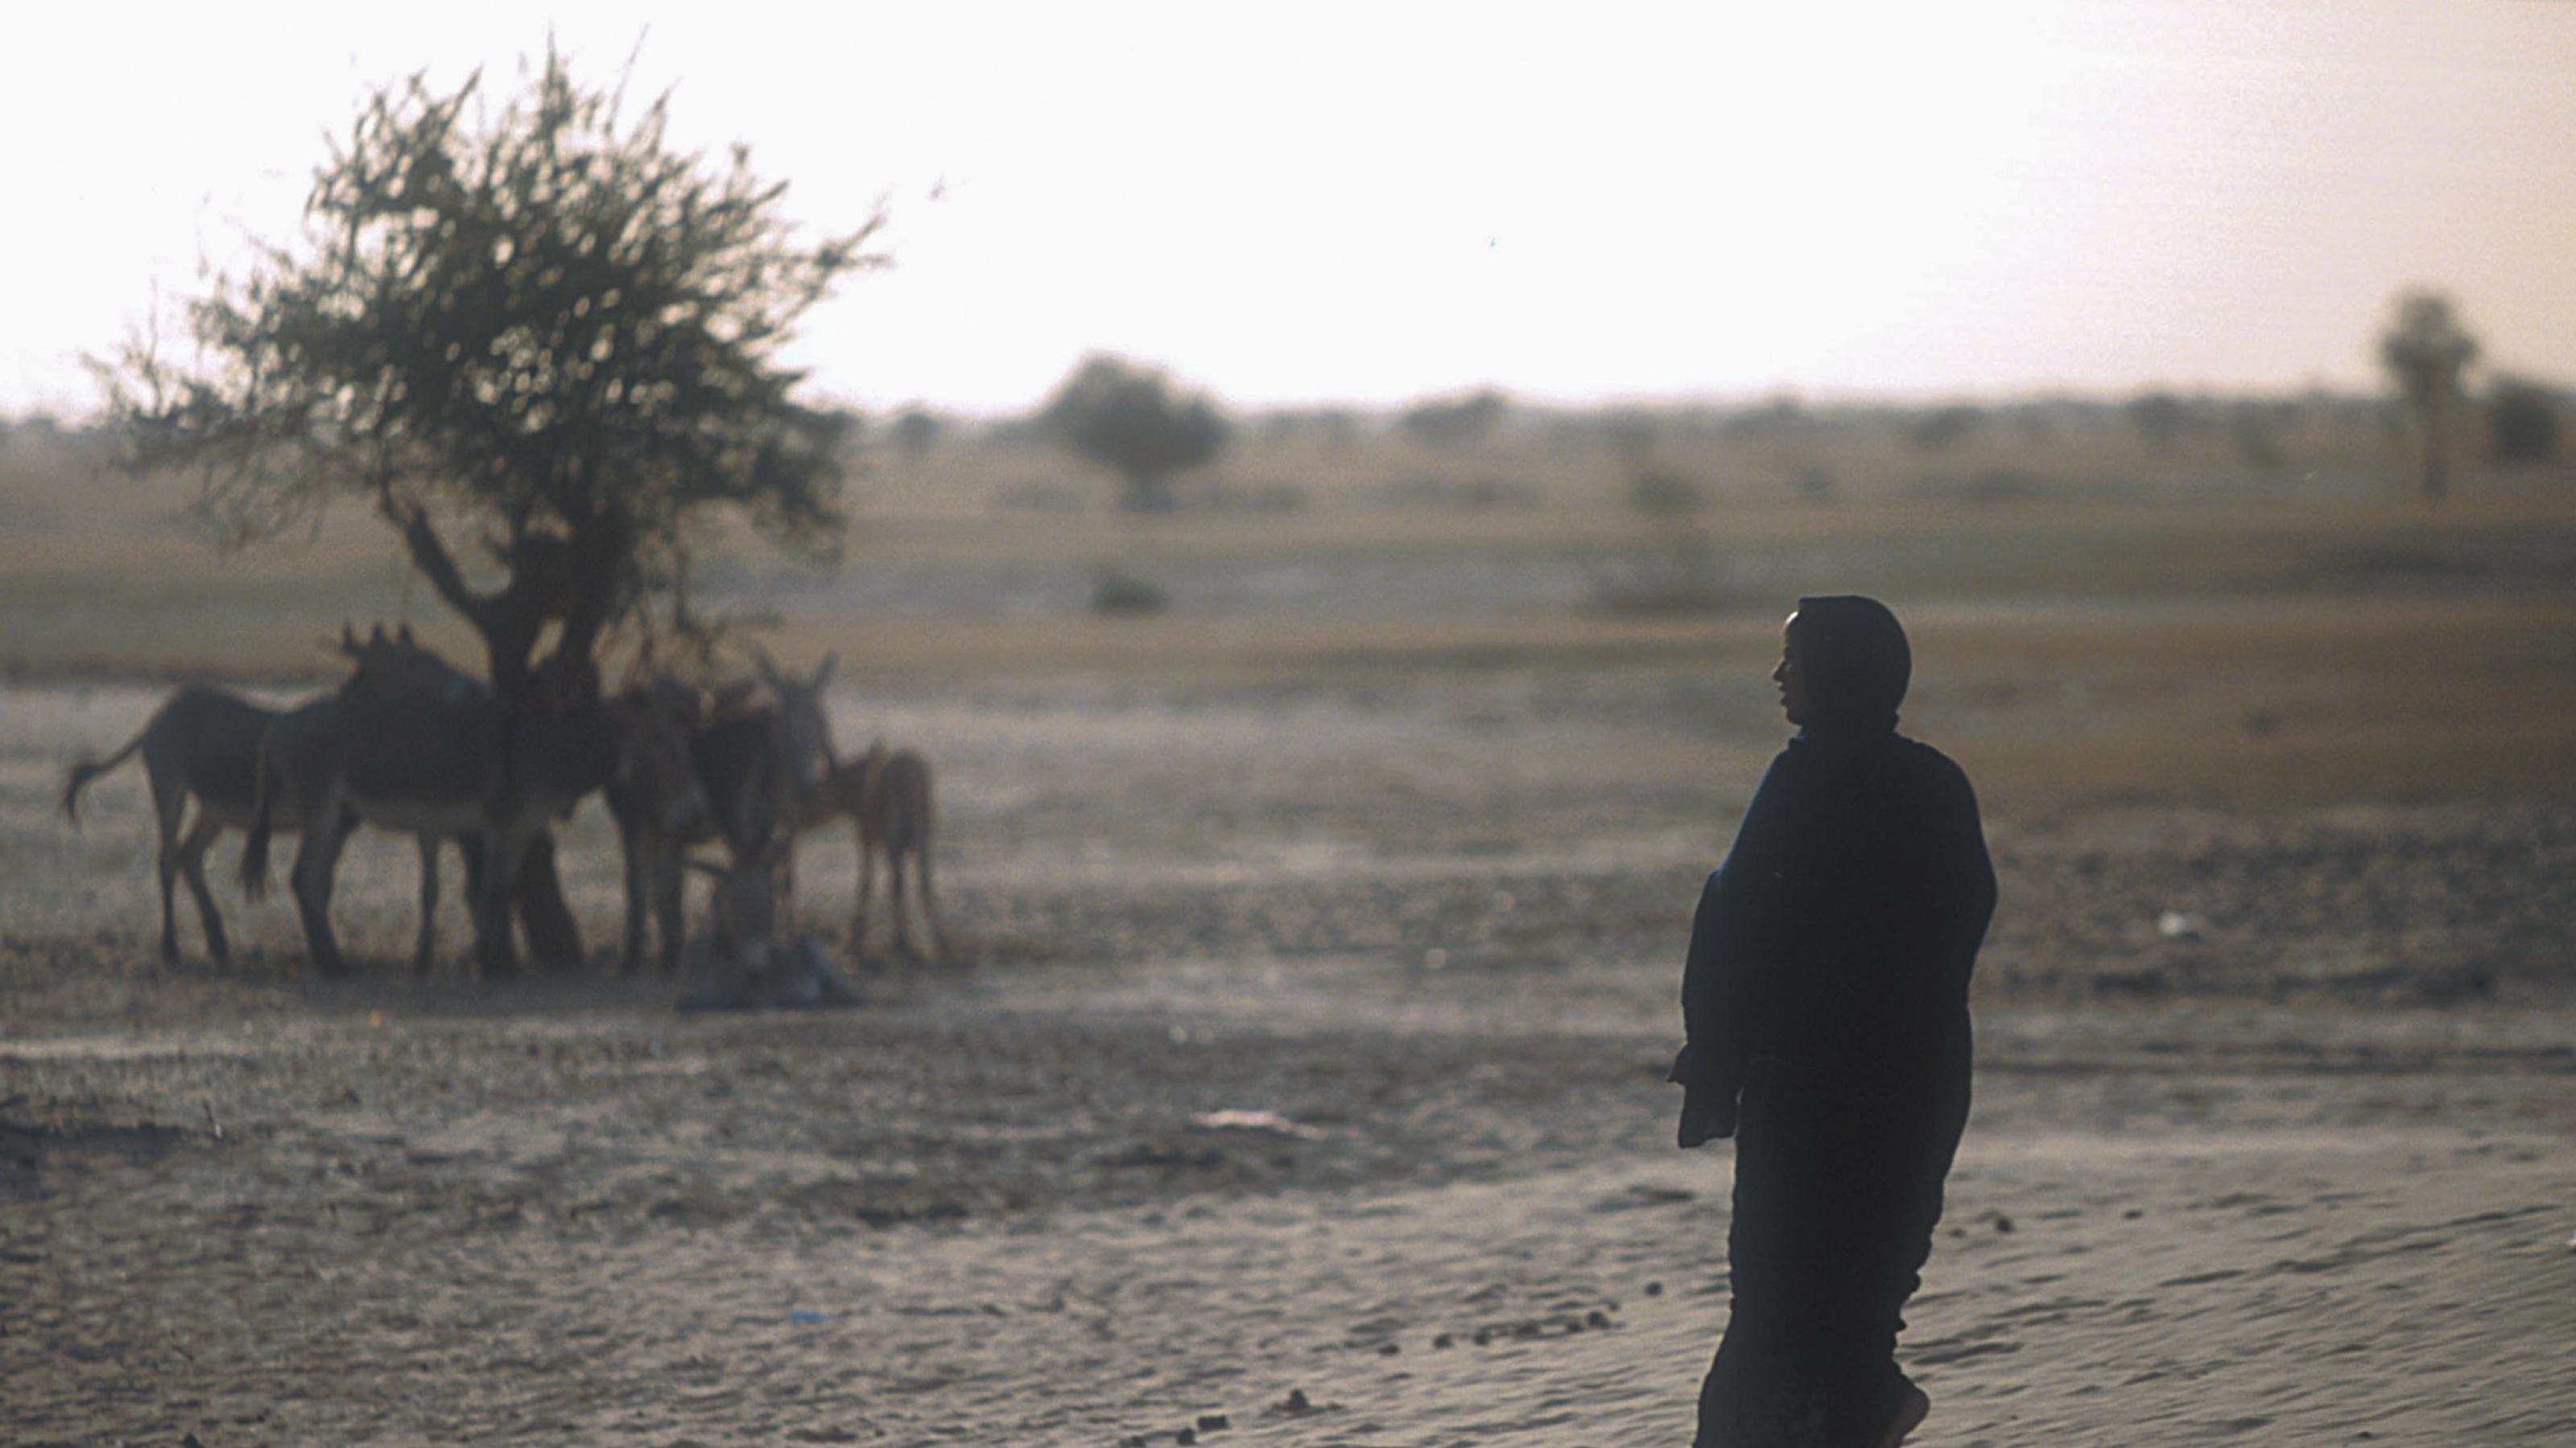 Das Foto zeigt eine Szene in der Wüste im Norden von Mali. Links steht ein einzelner Baum, unter dem sich Esel auf der Suche nach Schatten drängen. Rechts im Vordergrund steht eine schwarz gekleidete Frau, ihr langes Kleid weht im Wind. Im Hintergrund sind noch vereinzelte Bäume zu sehen, aber der Haupteindruck ist die Wüste.